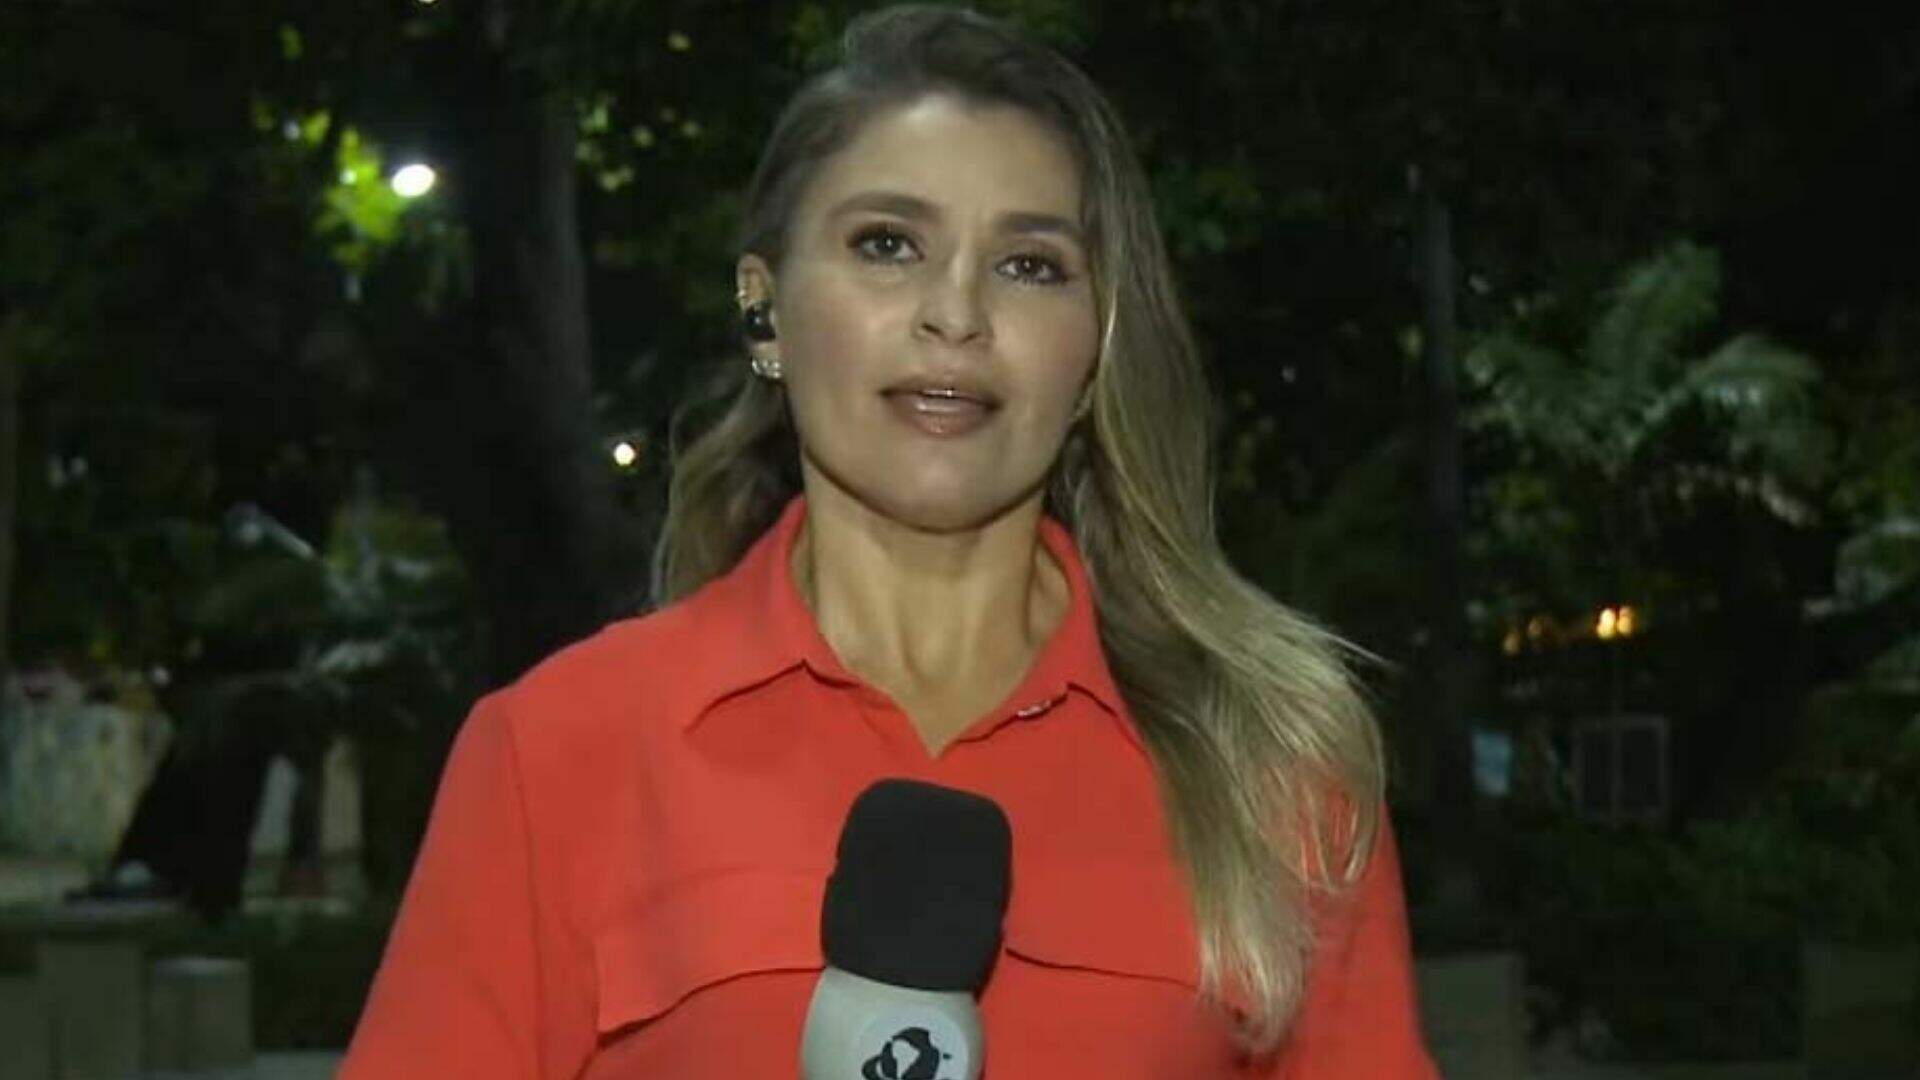 Desespero ao vivo! Barata voadora invade reportagem, posa em jornalista e momento viraliza - Metropolitana FM